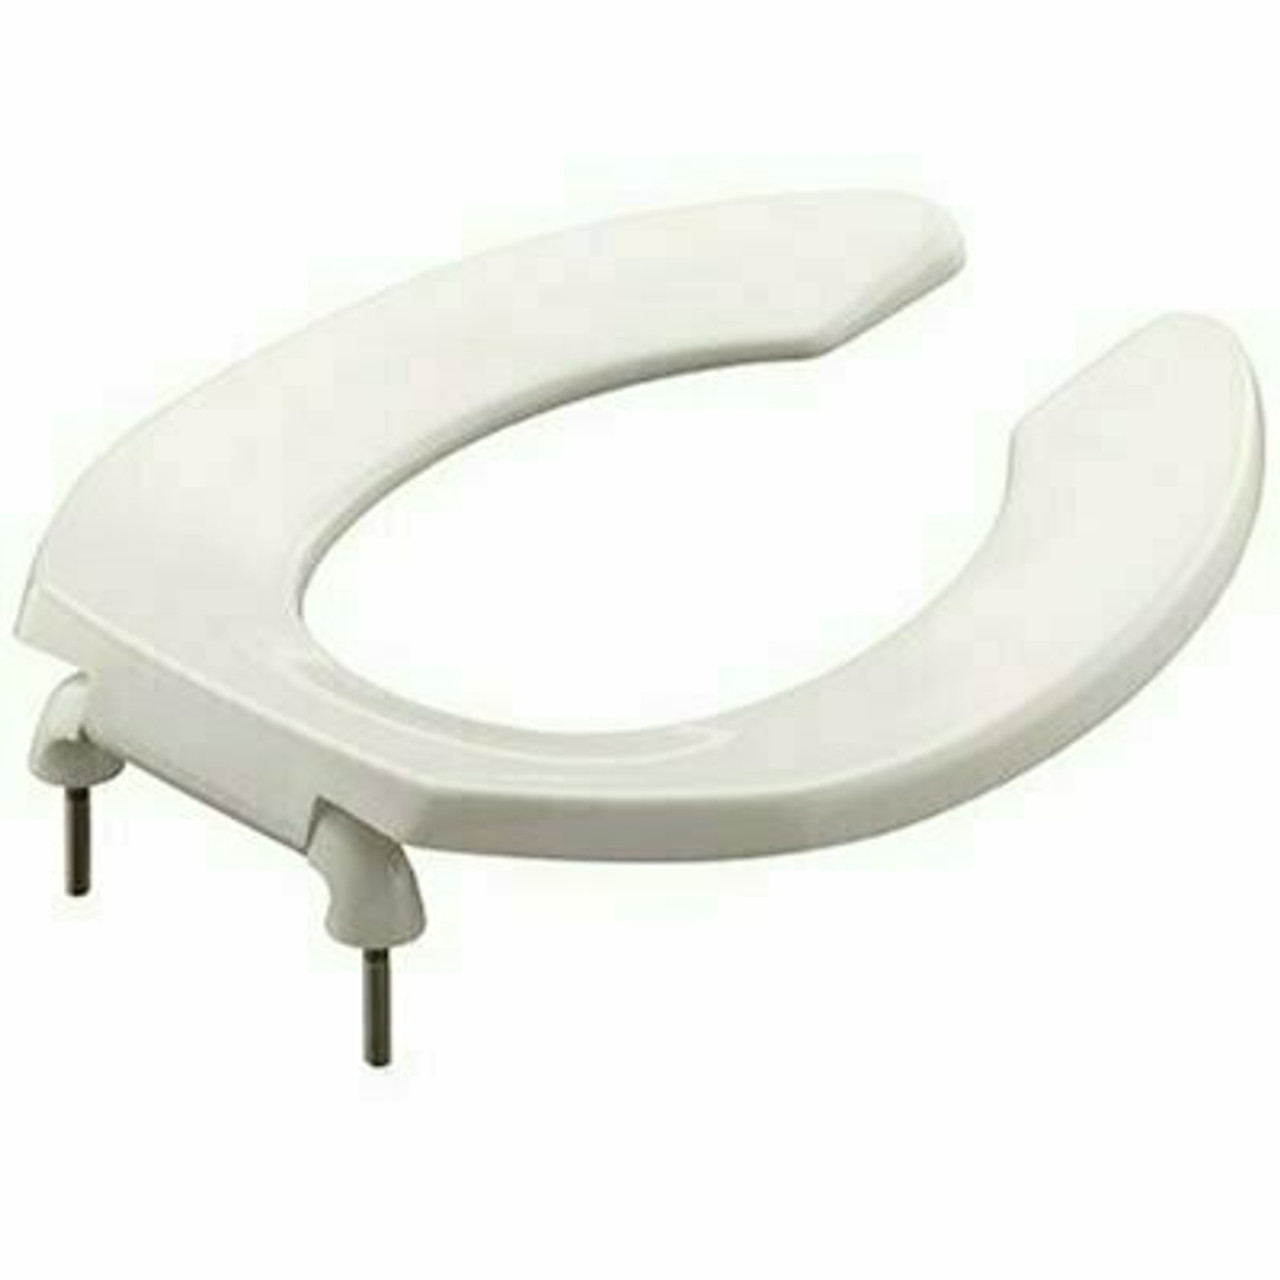 Kohler Lustra Round Open Front Toilet Seat In White